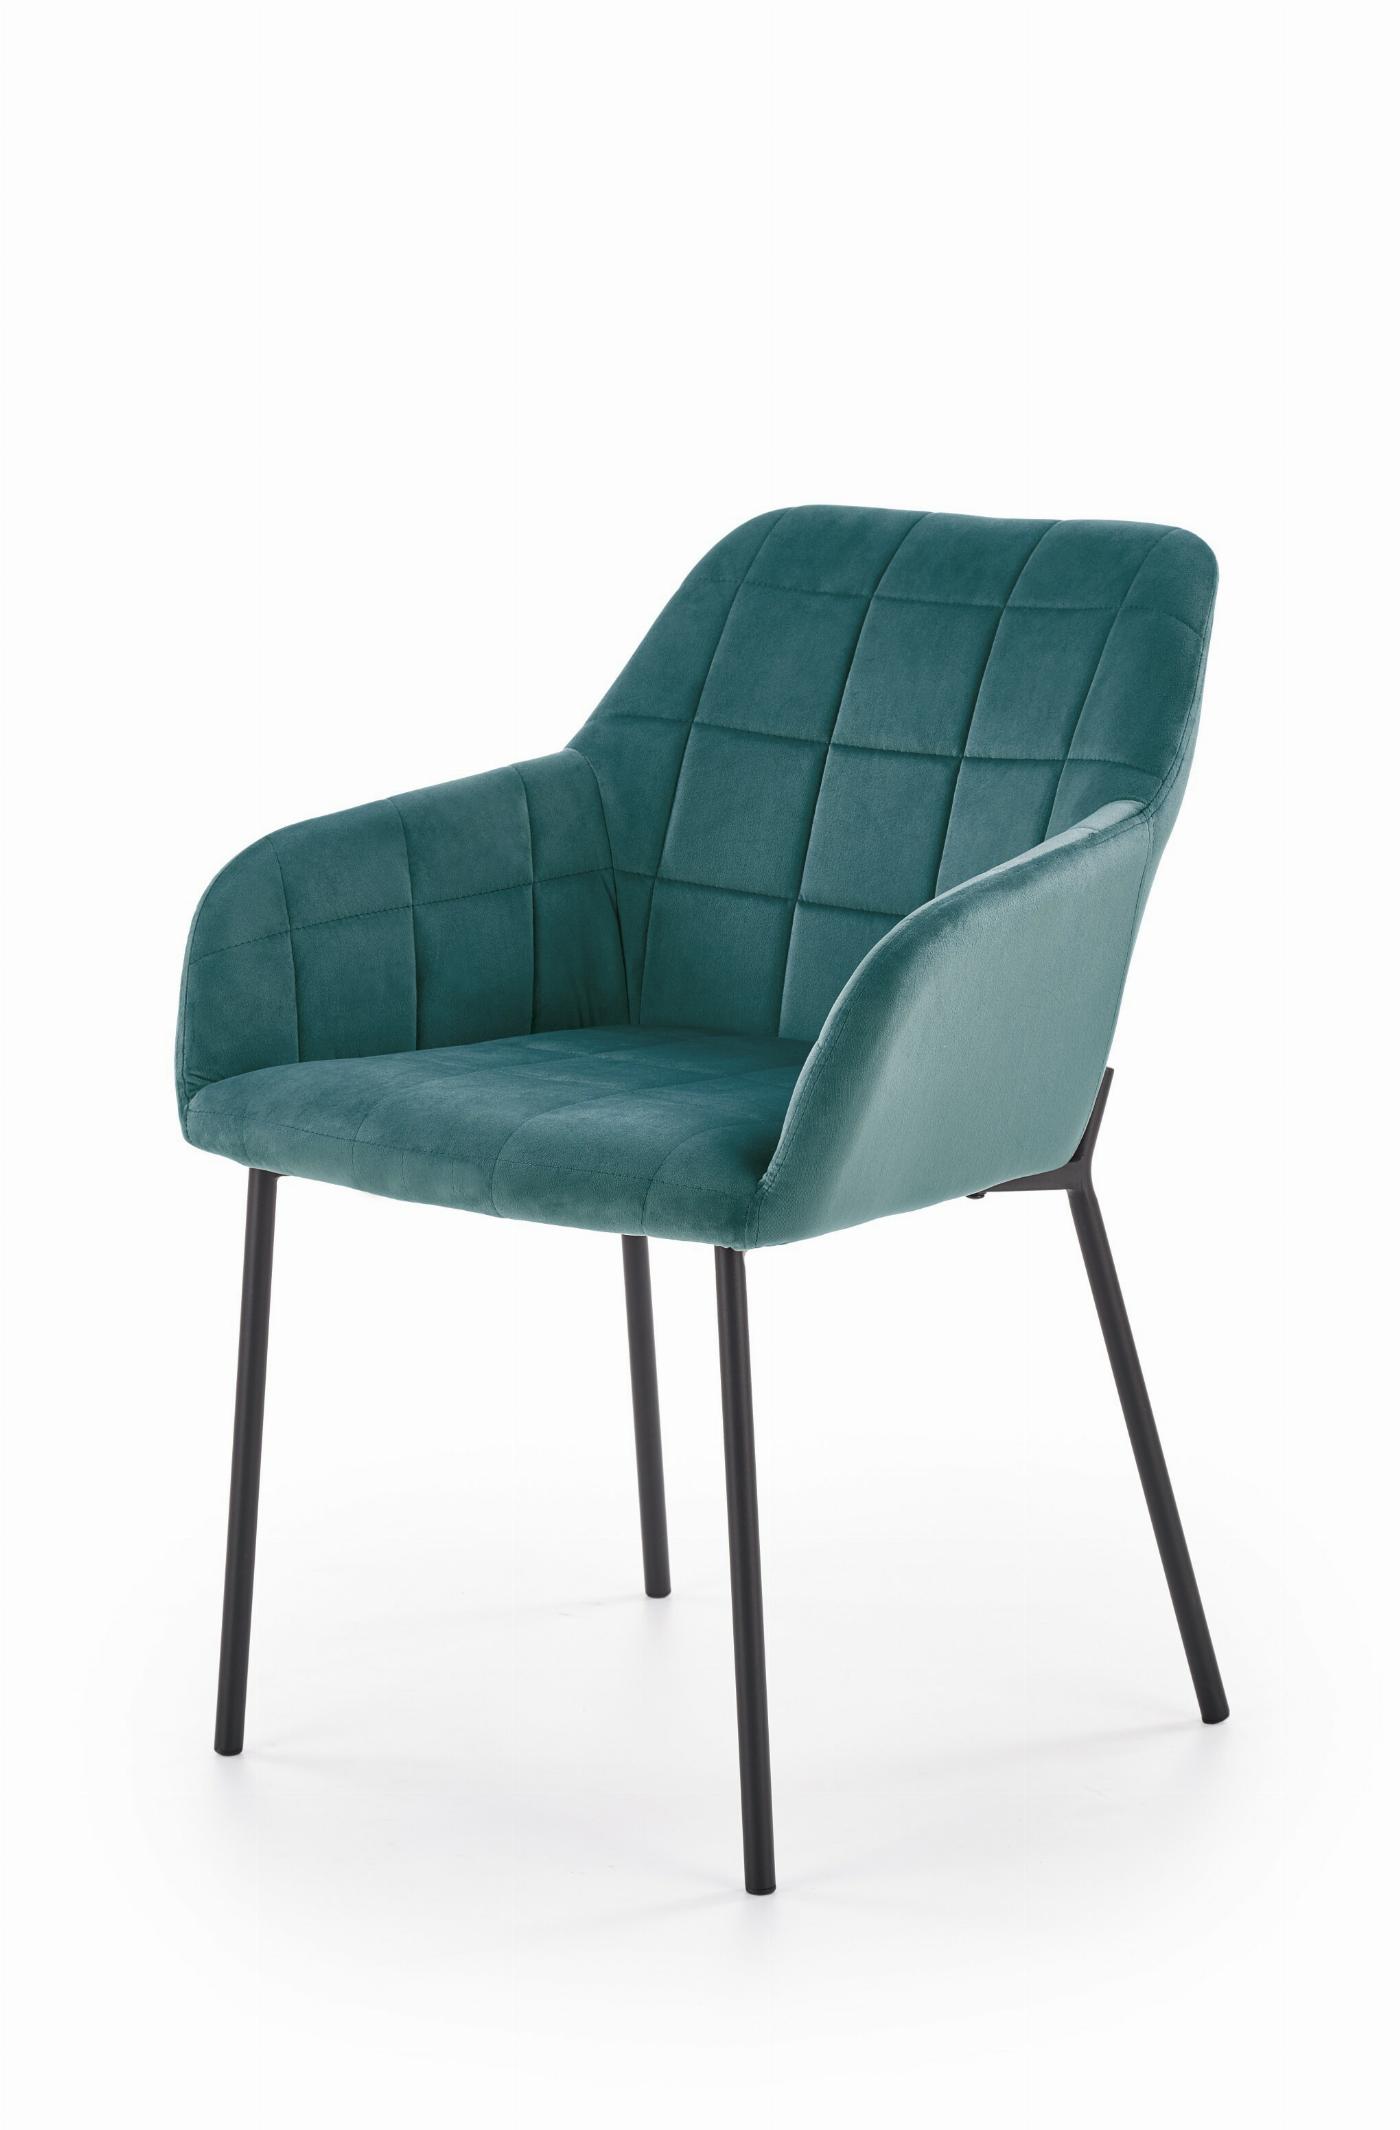 K305 krzesło czarny / ciemny zielony